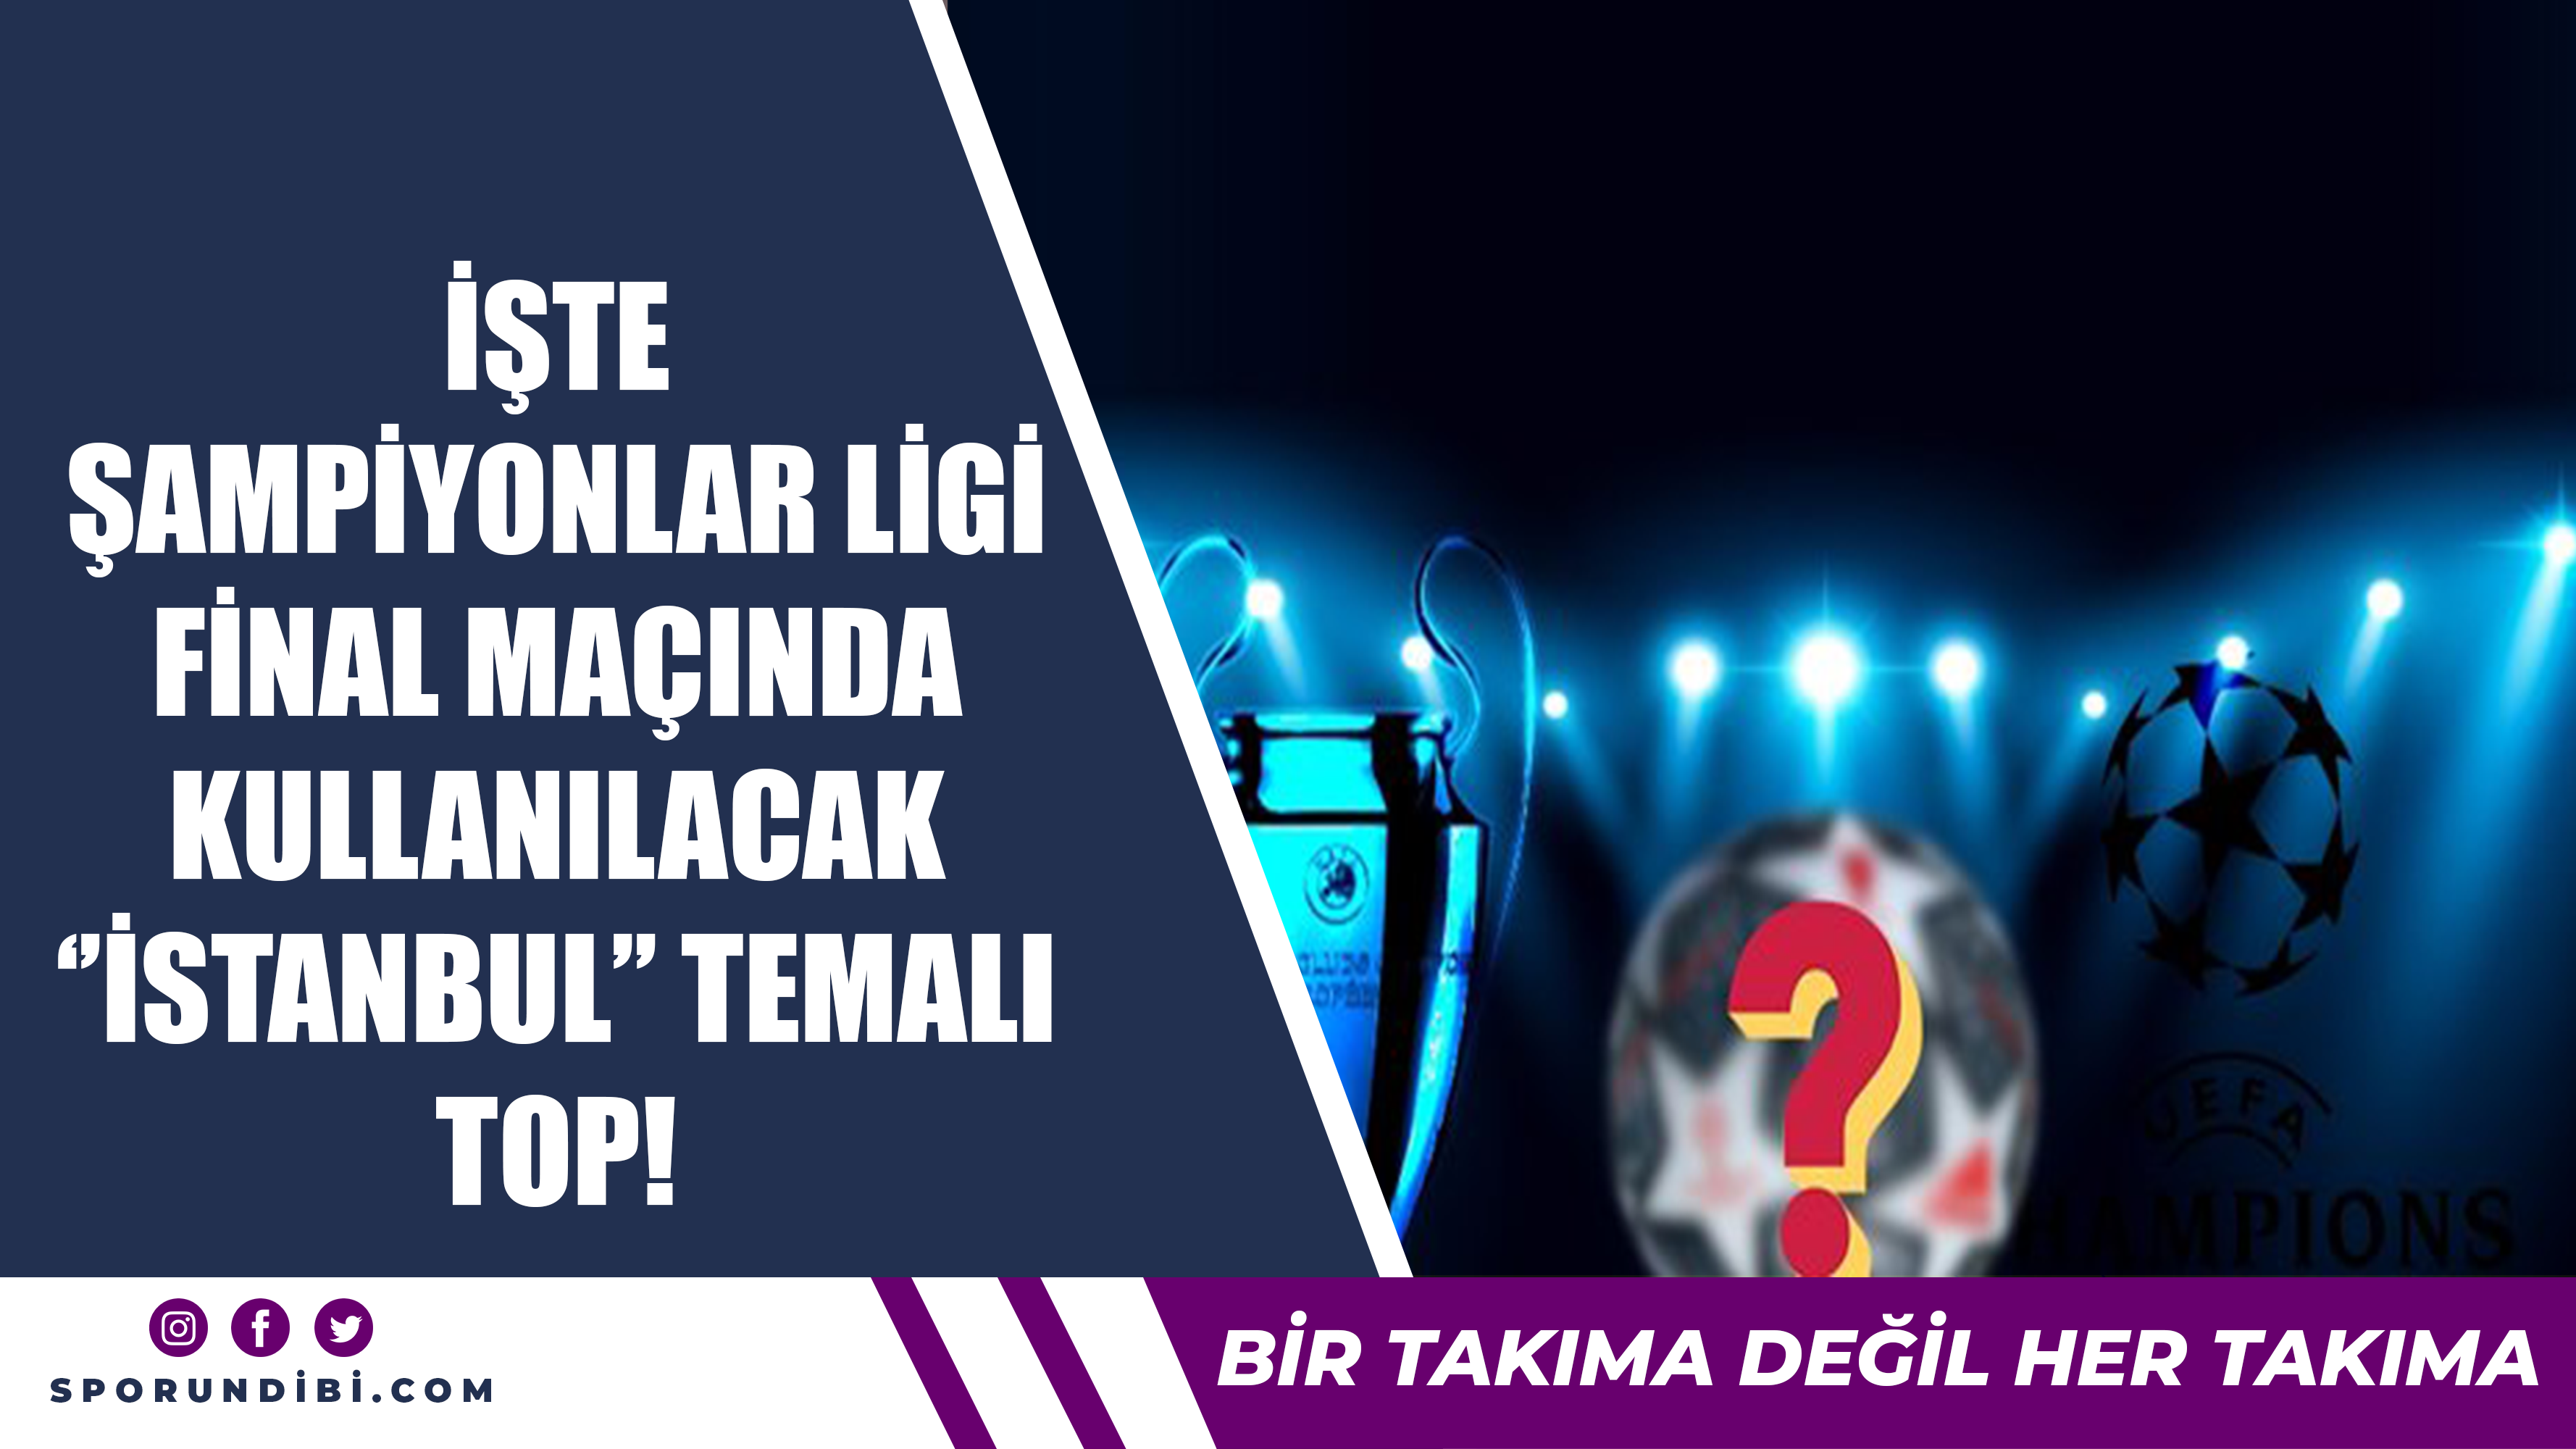 İşte Şampiyonlar Ligi final maçında kullanılacak 'İstanbul' temalı top!